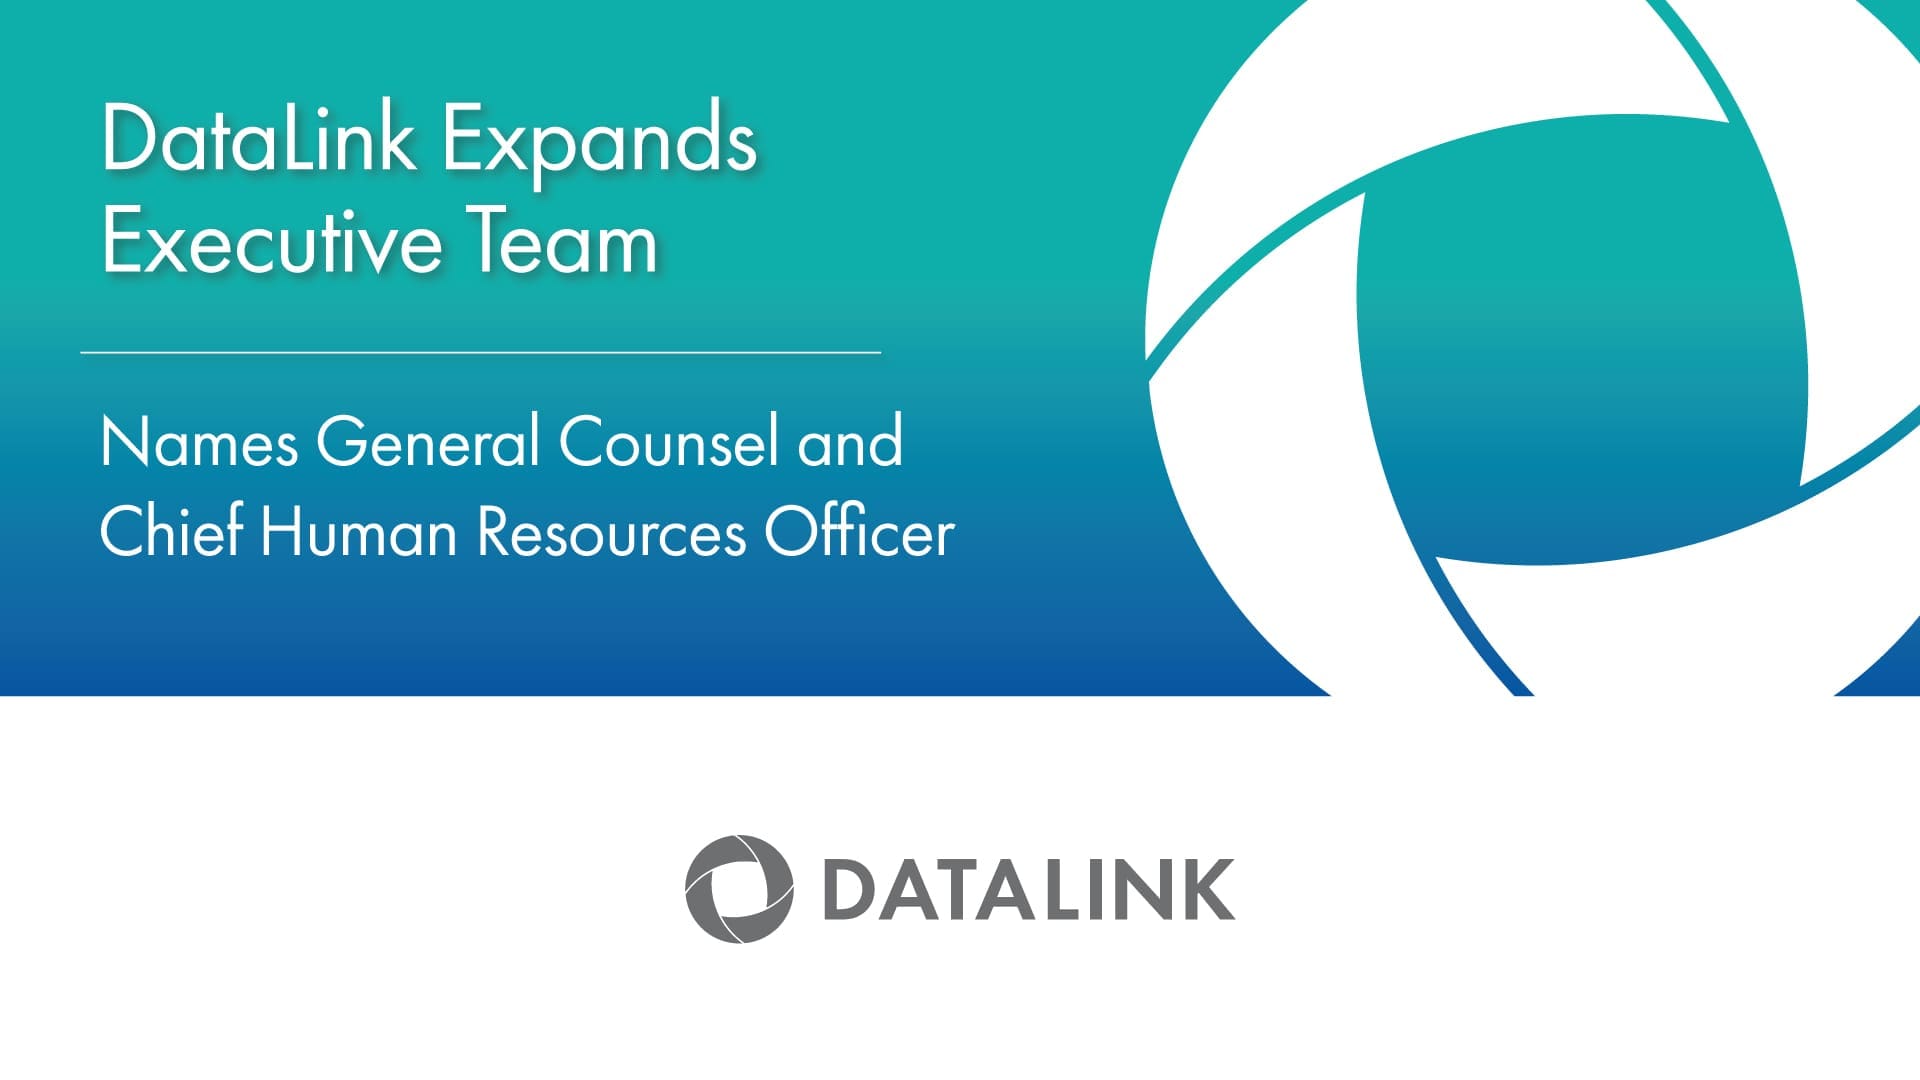 DataLink expands executive team